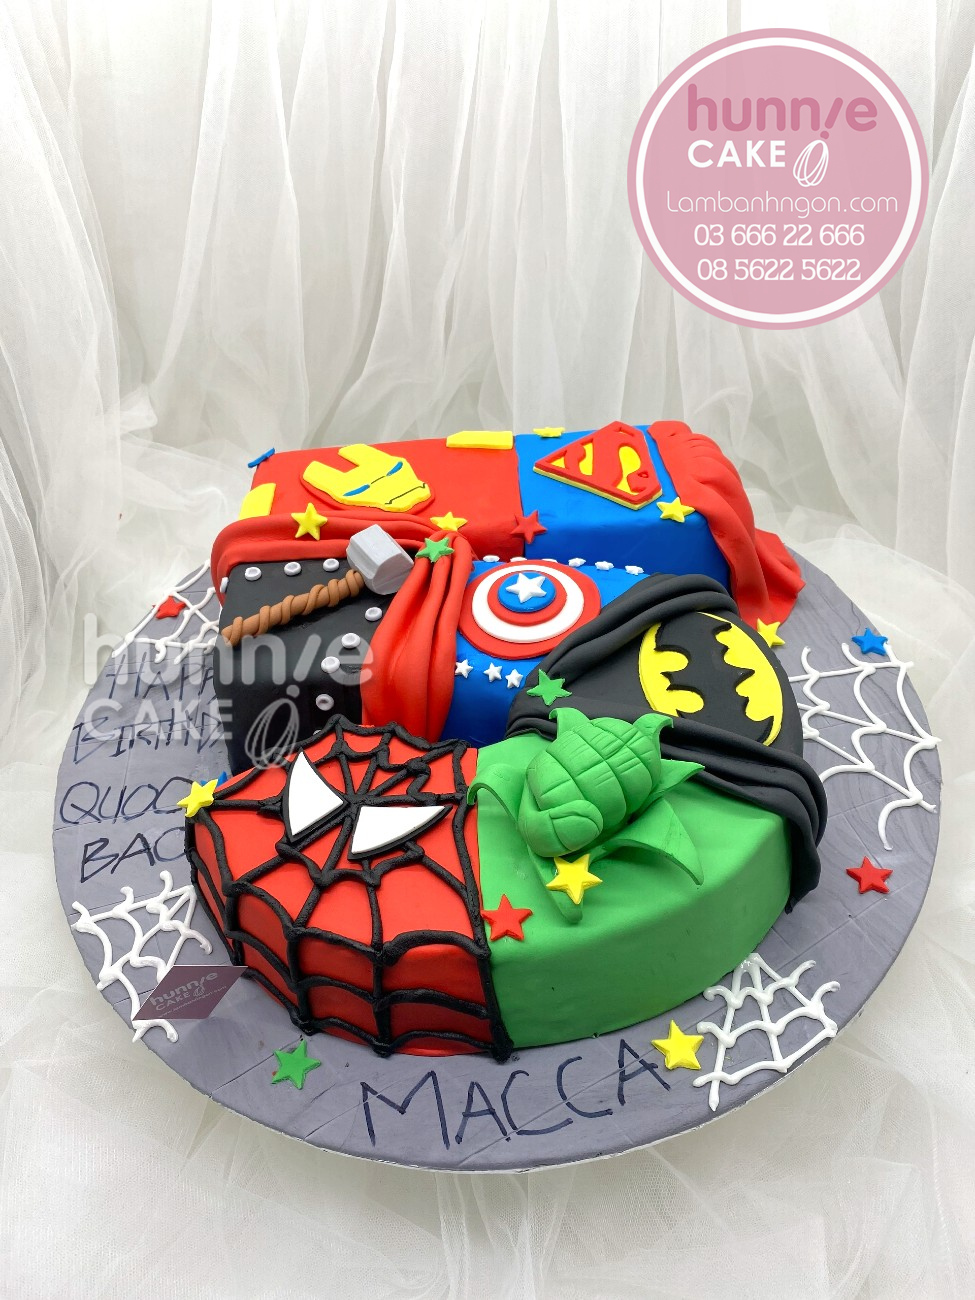 Bánh fondant sinh nhật hình số 5 siêu nhân, siêu anh hùng đẹp ấn tượng nhất 9883 - Bánh ngon đẹp